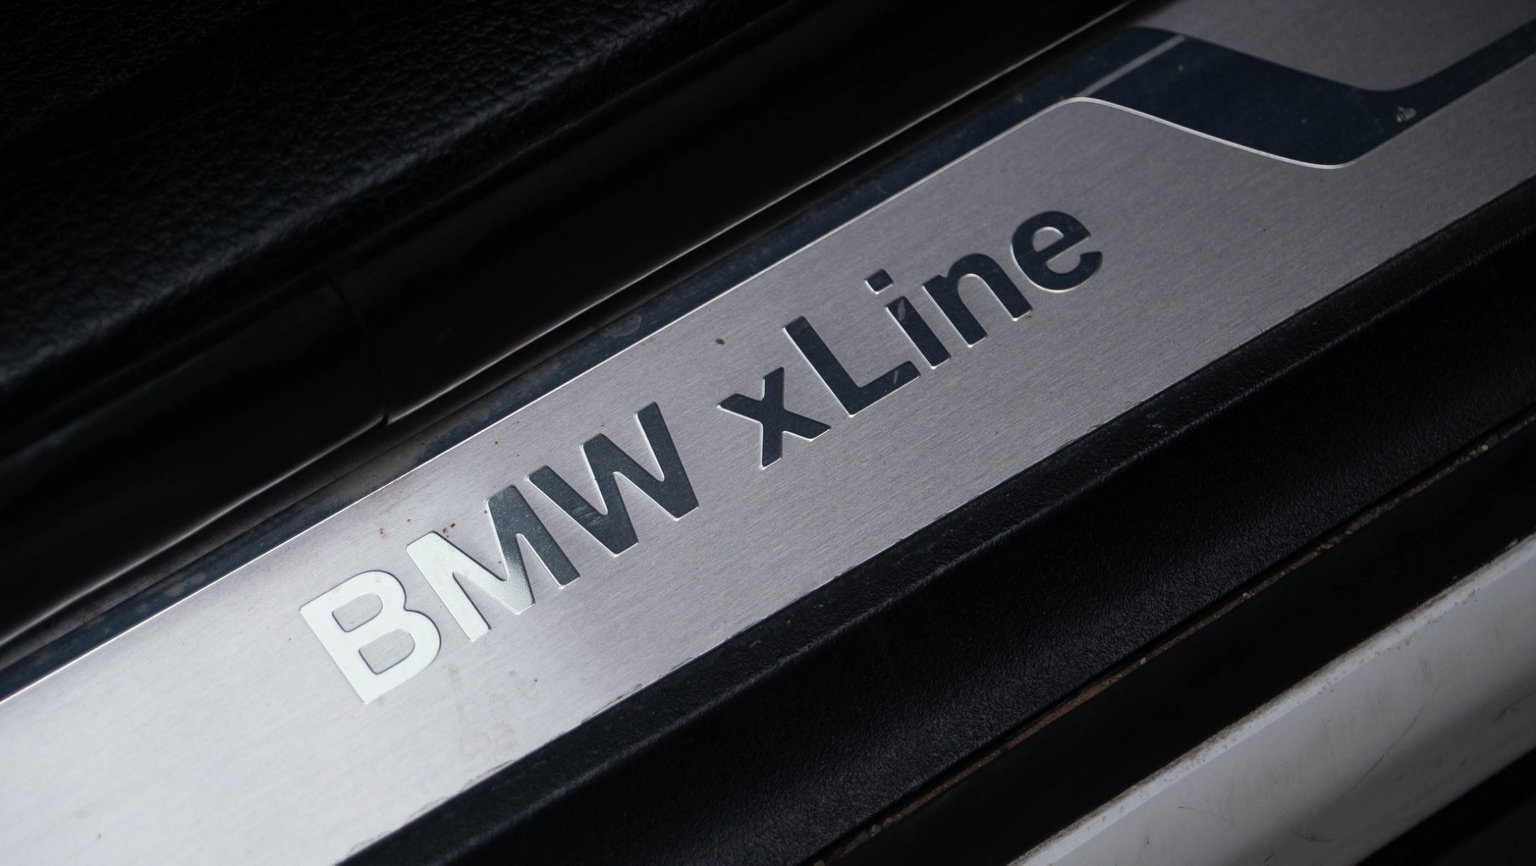 BMW X1 E84 ปี 2013 สีขาว